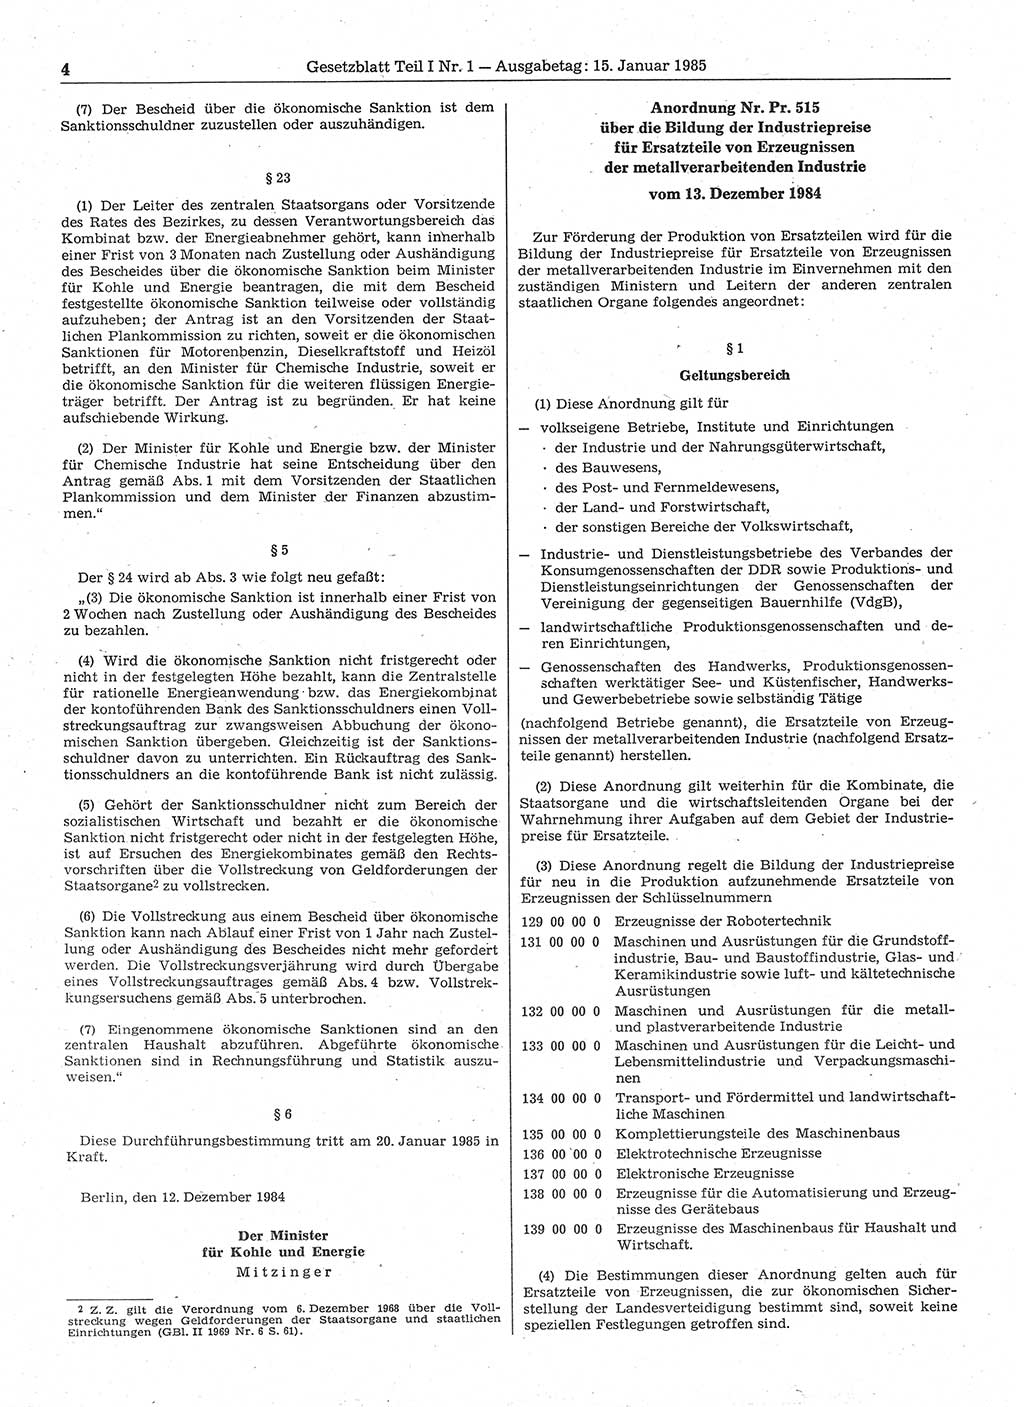 Gesetzblatt (GBl.) der Deutschen Demokratischen Republik (DDR) Teil Ⅰ 1985, Seite 4 (GBl. DDR Ⅰ 1985, S. 4)